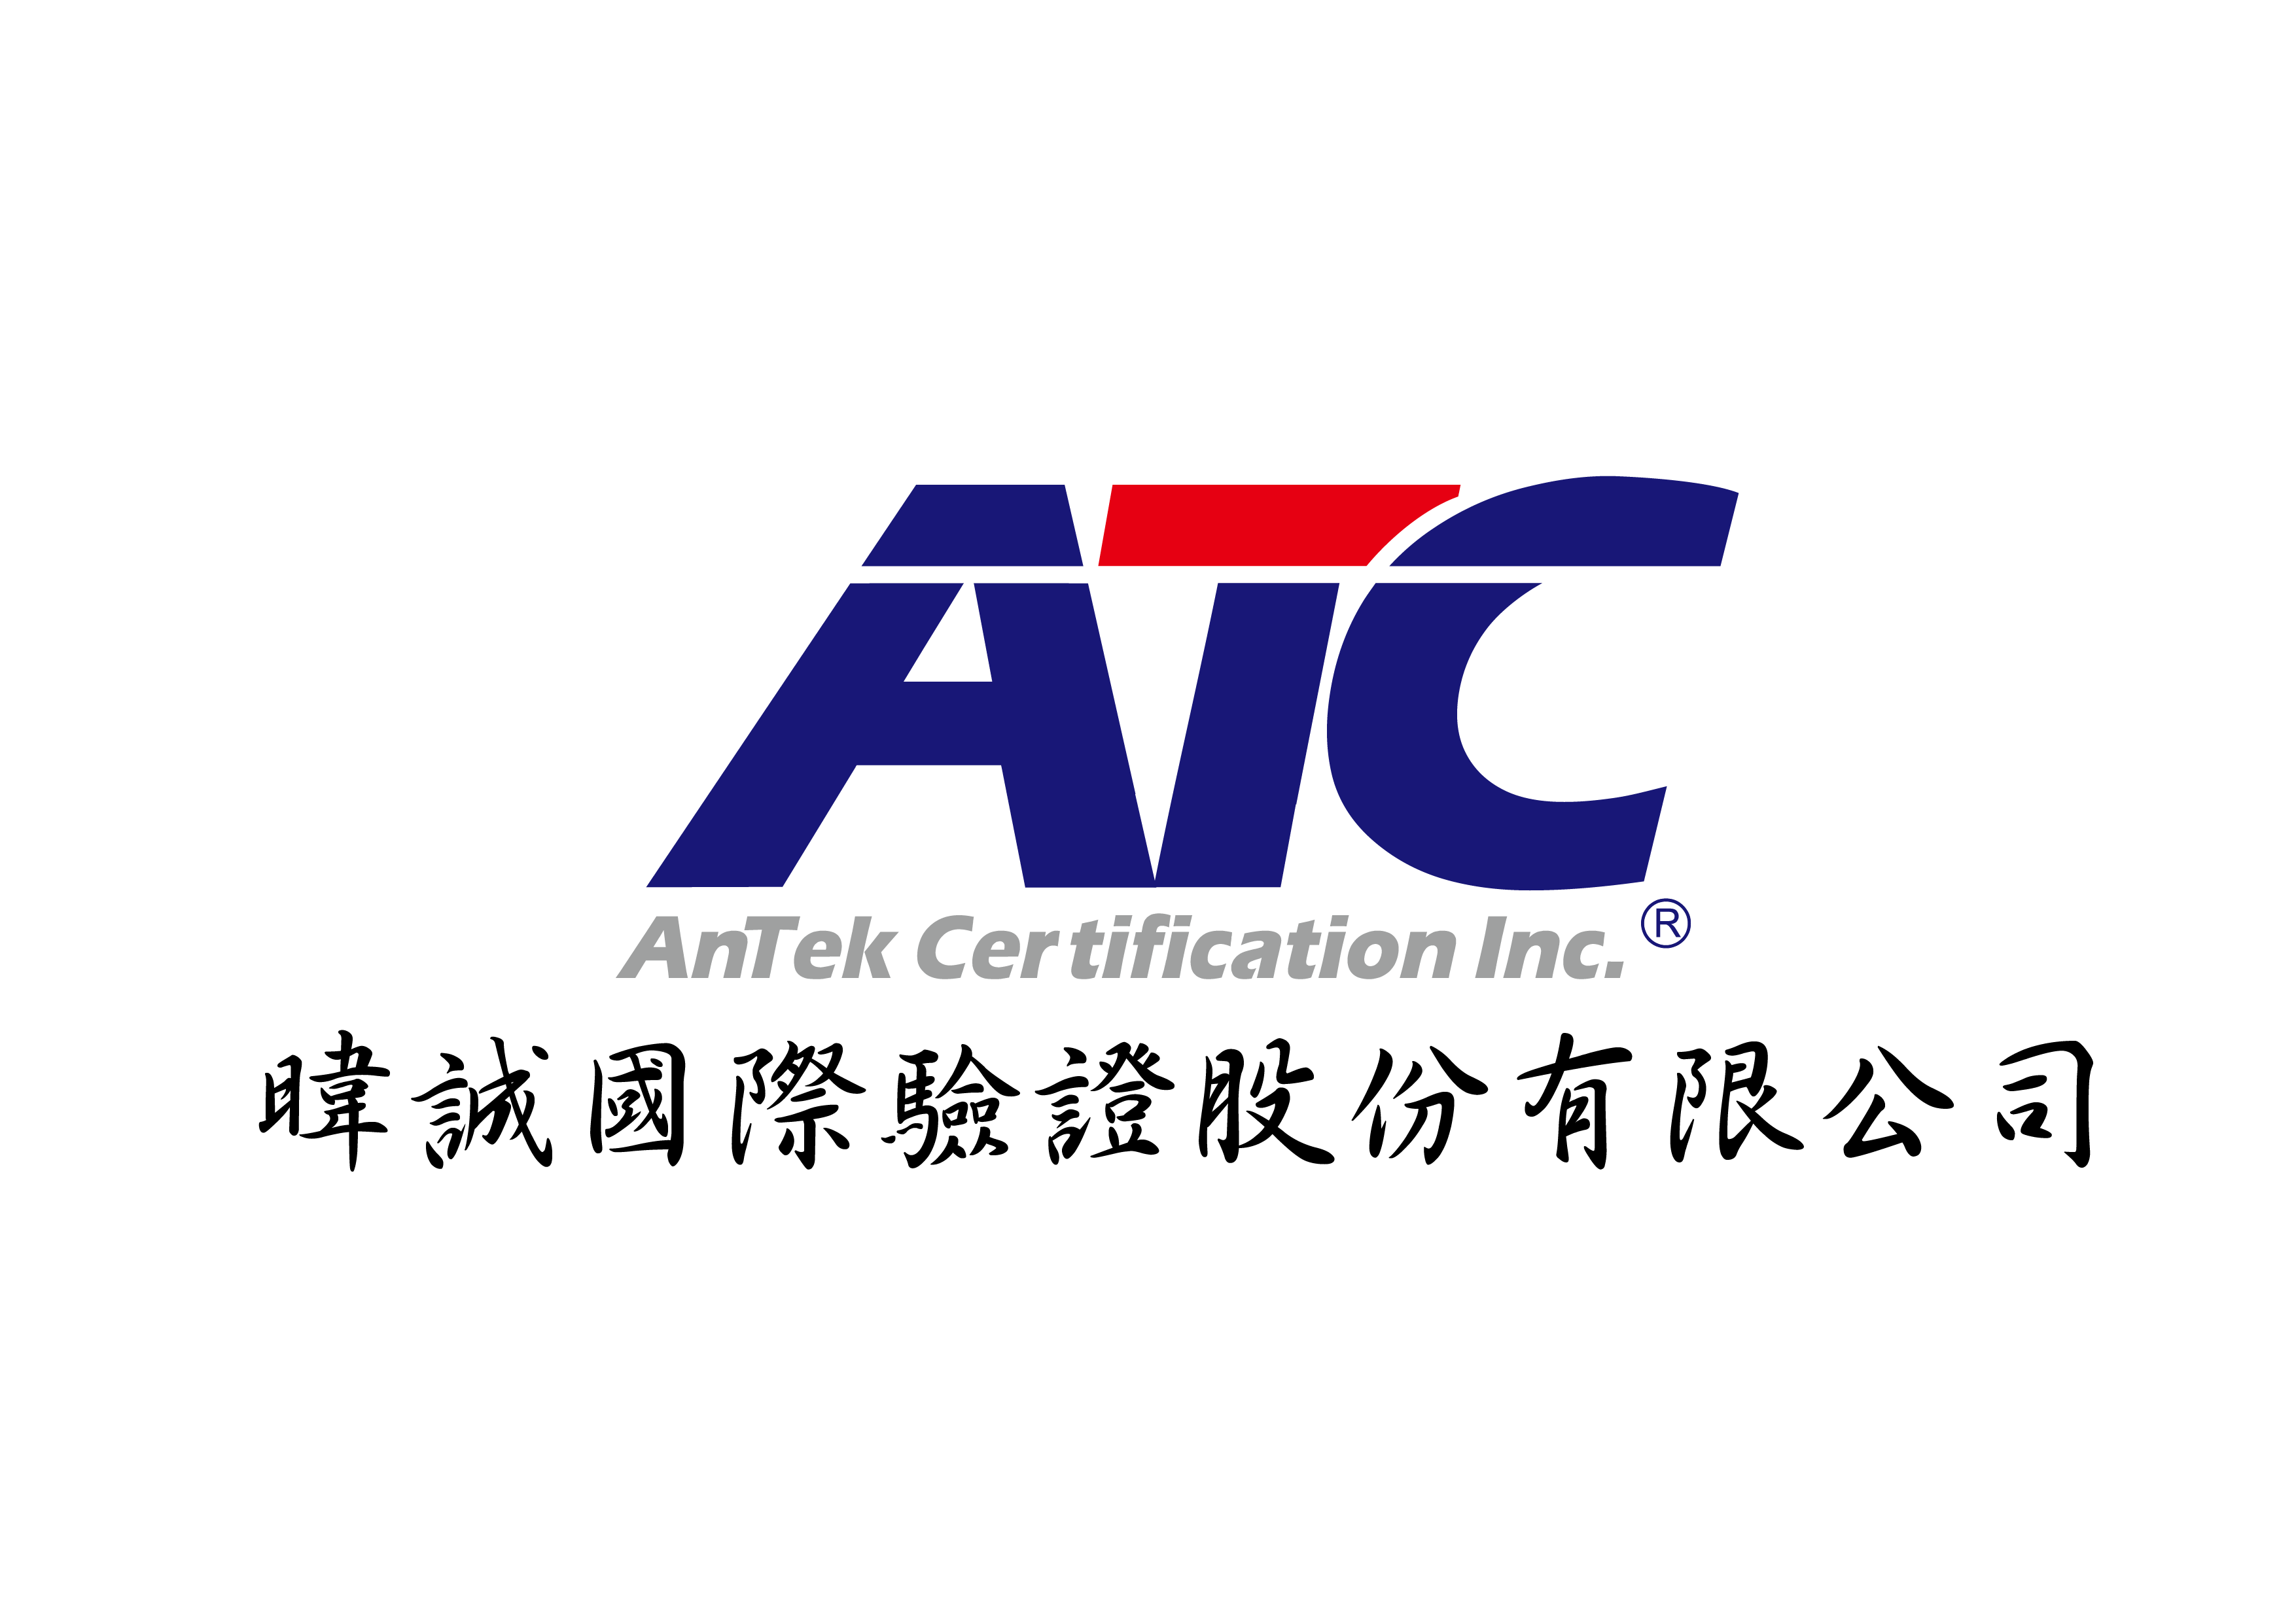 atc logo.png